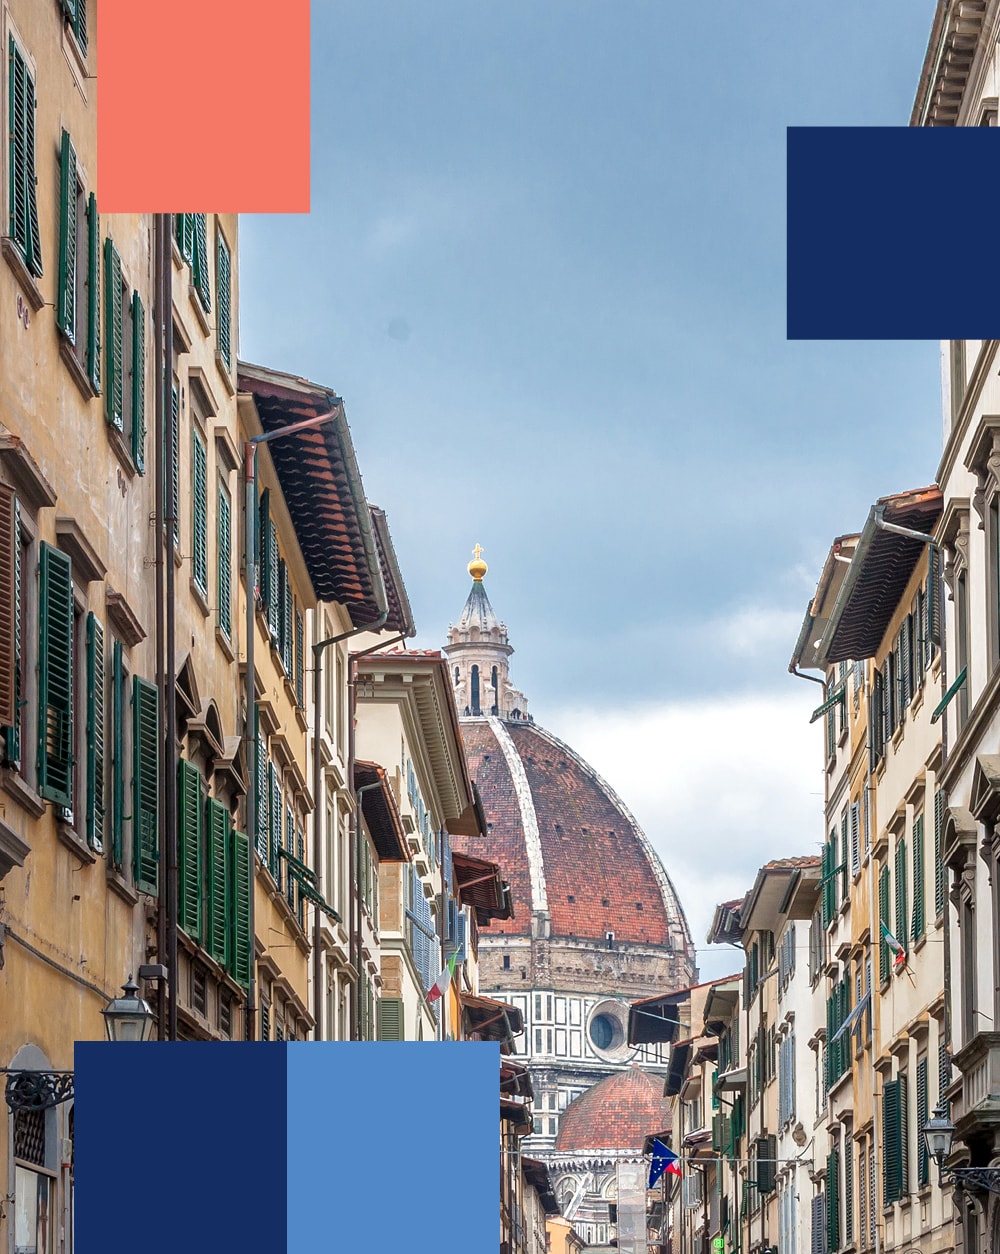 Blick auf die Kuppel von Brunelleschi von einer Straße in Florenz aus - mobile